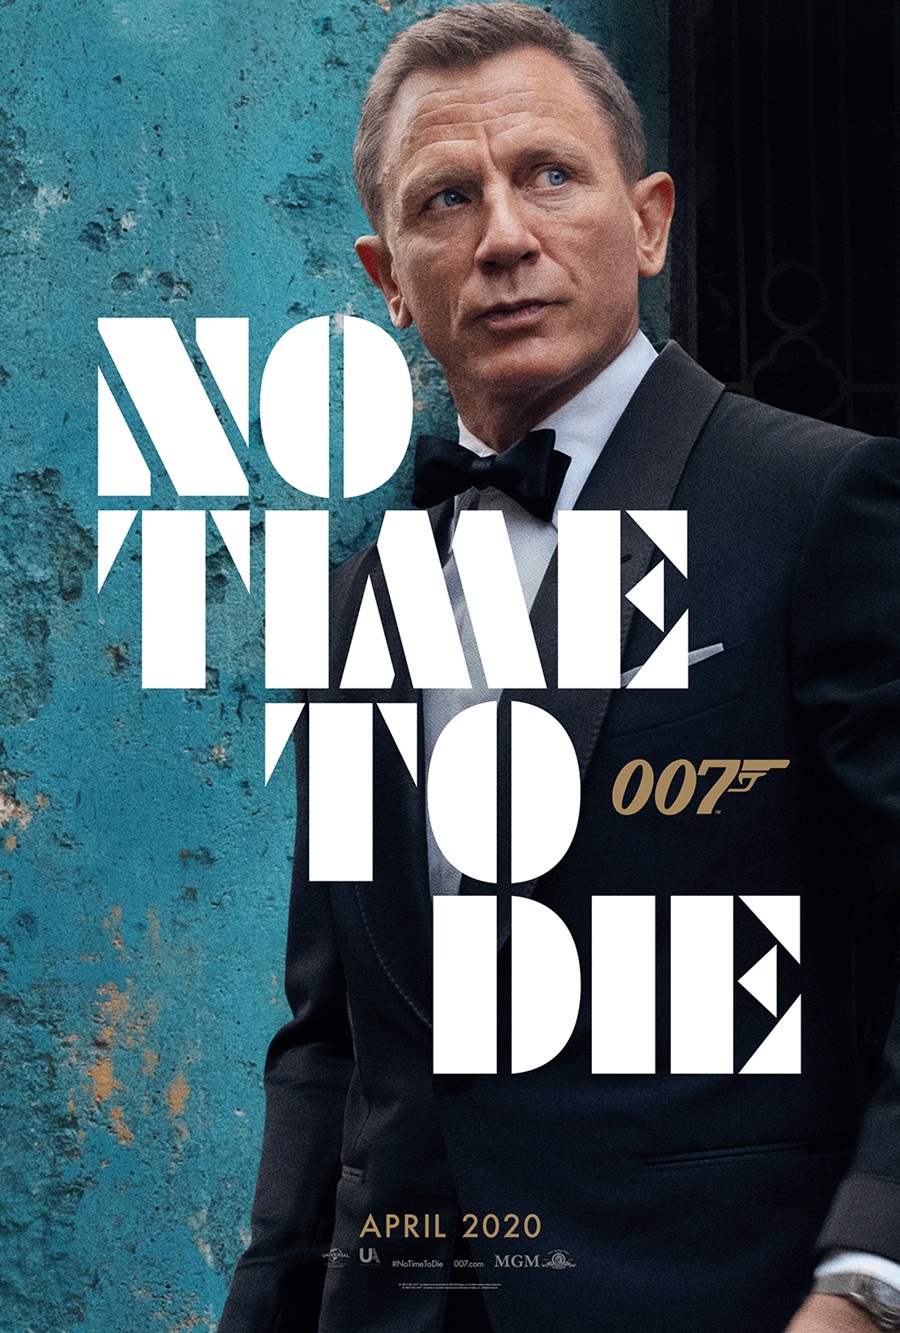 '007  Ÿ  ' ۷ι ̹  / : Ϲ Ľ 